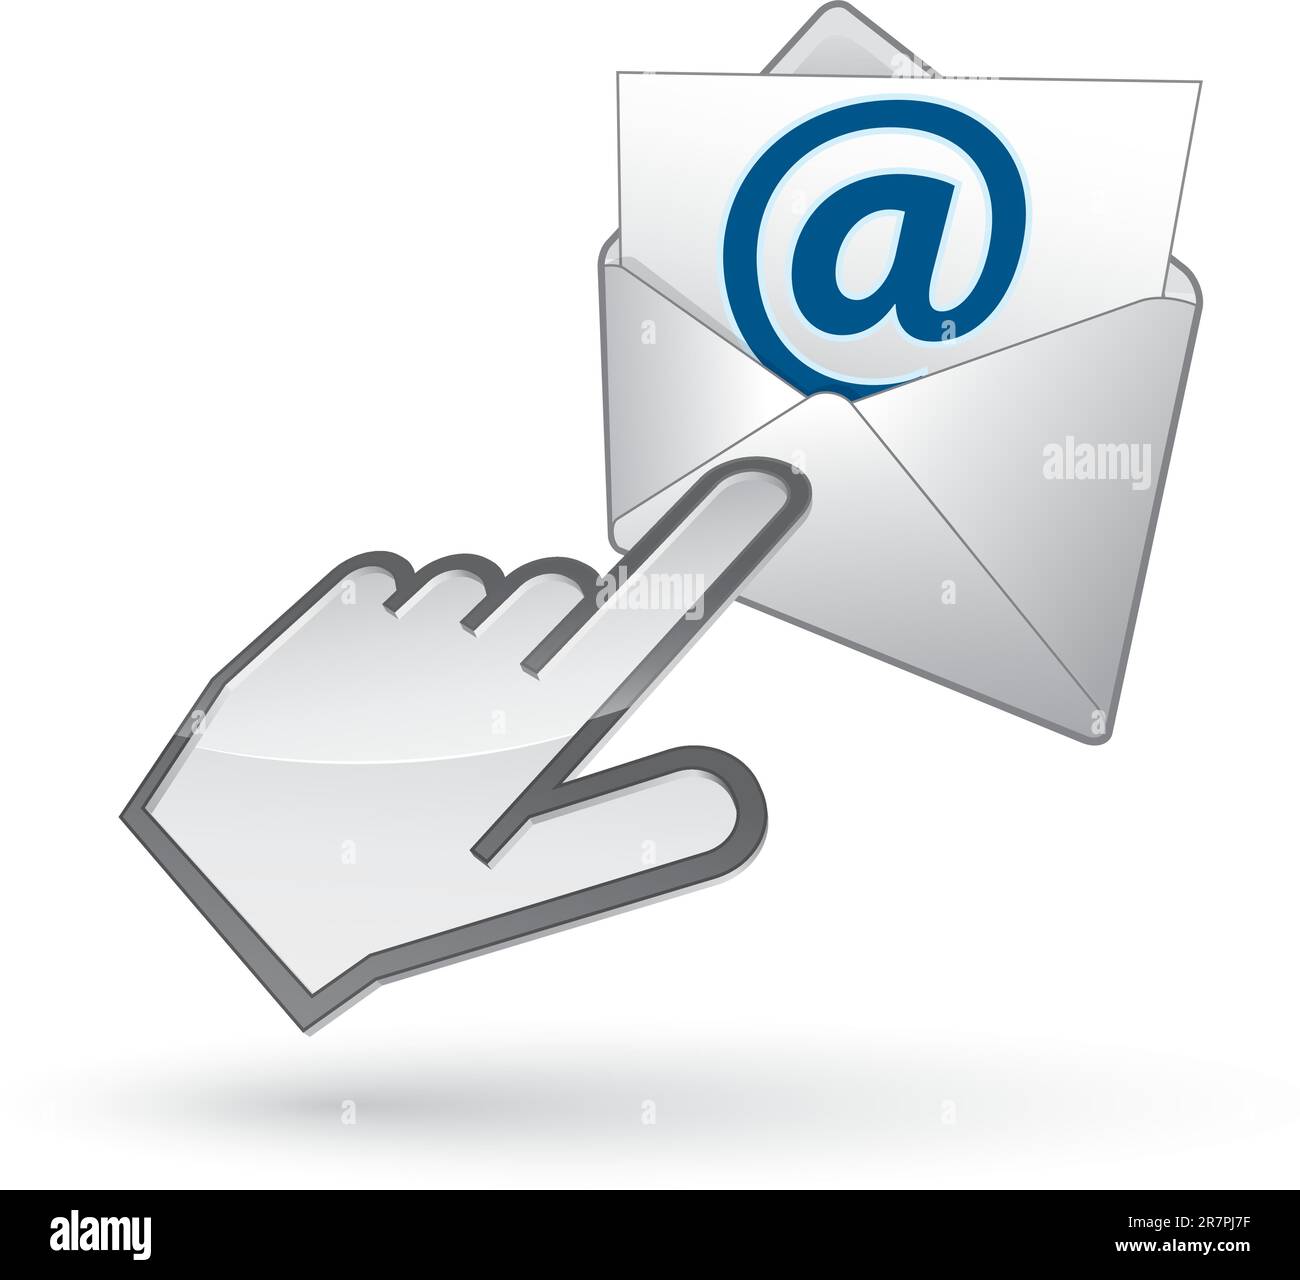 Icona del cursore sinistro sulla busta di posta elettronica, con ombreggiatura su sfondo bianco Illustrazione Vettoriale